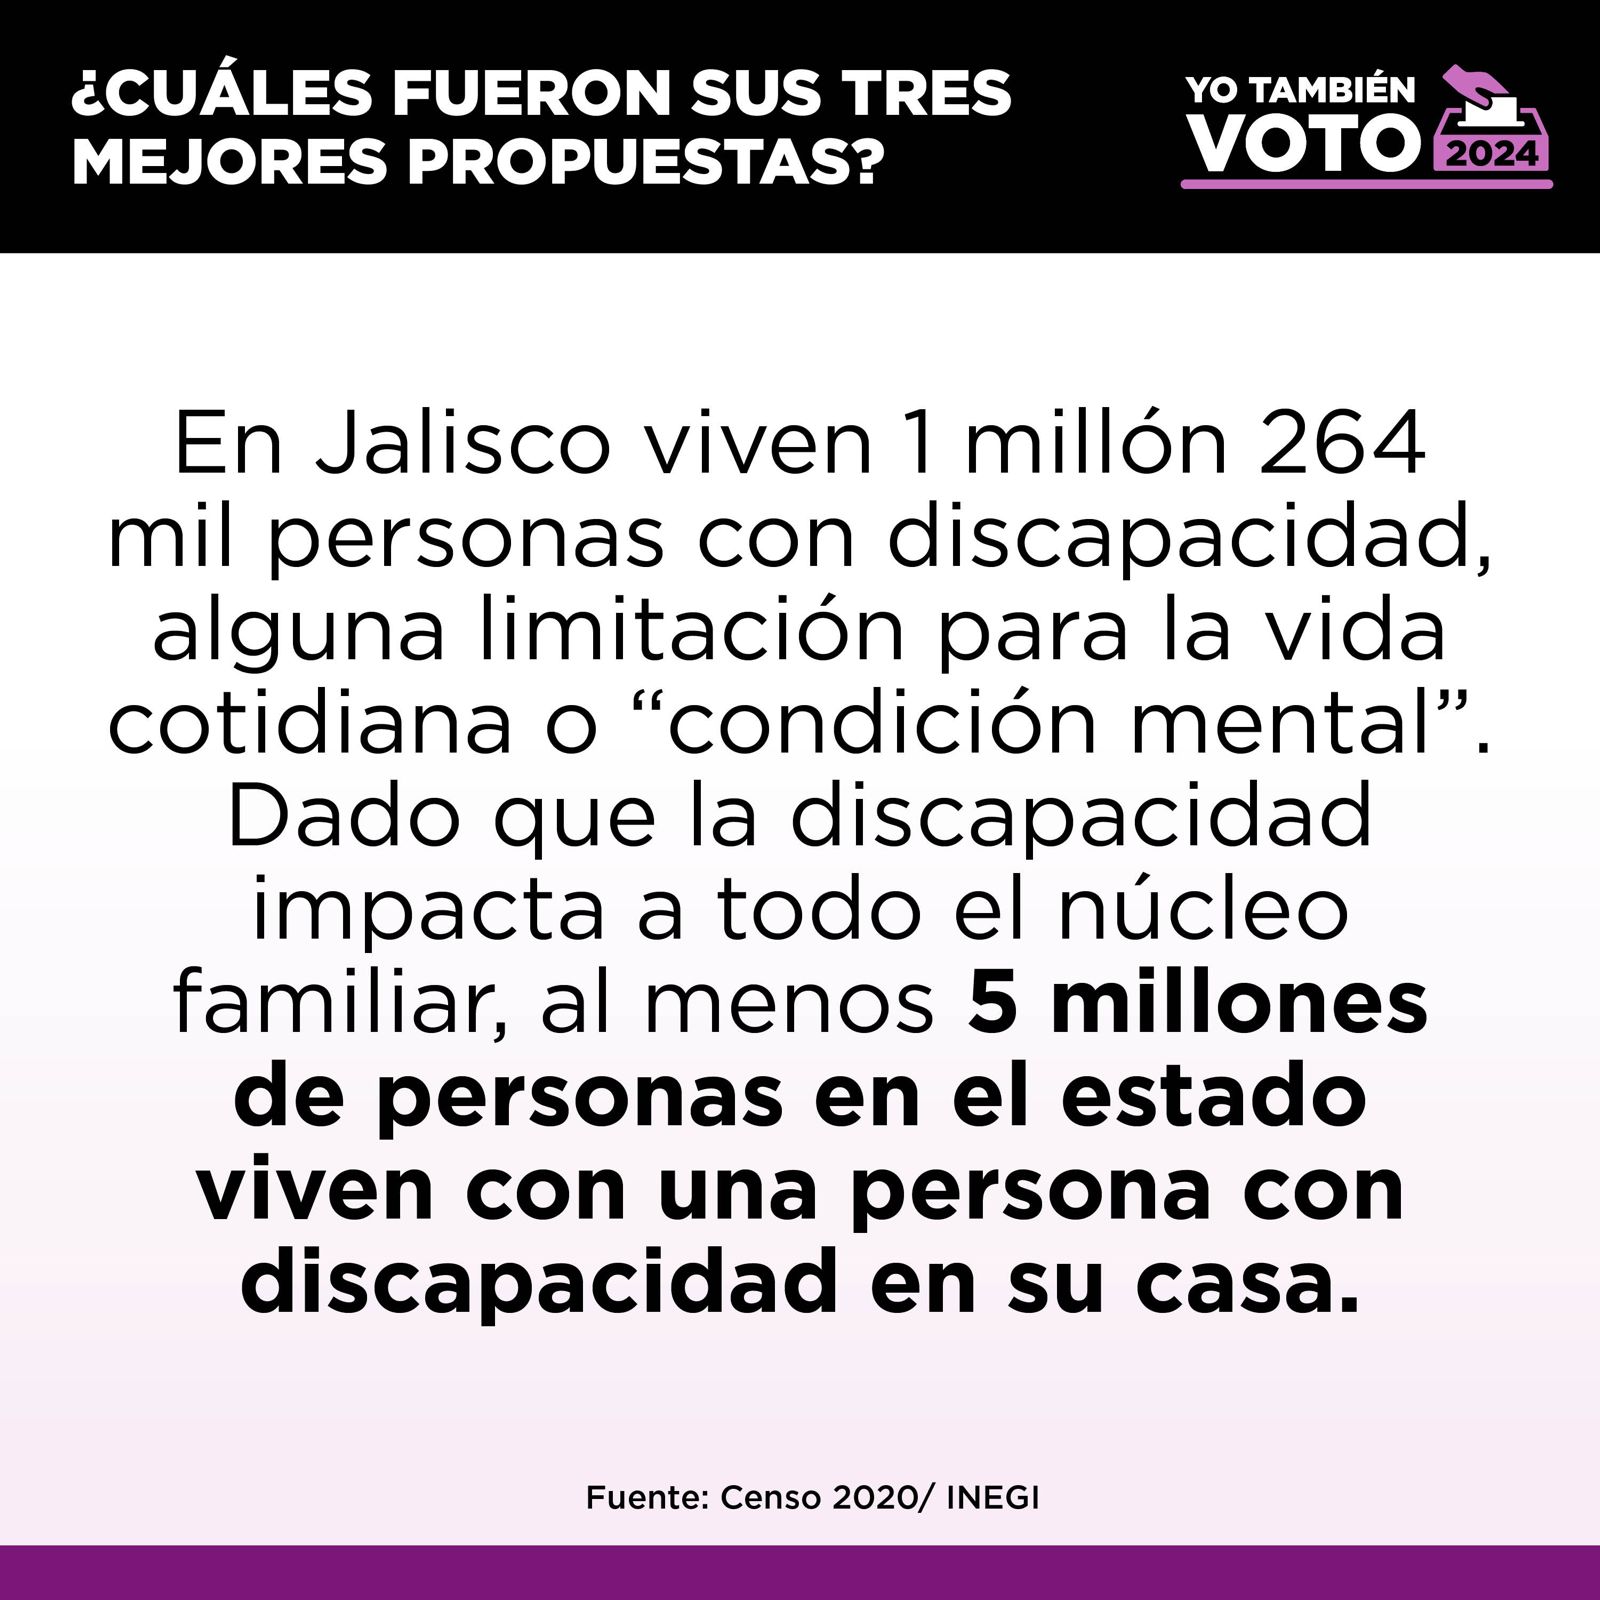 Datos del INEGI sobre discapacidad en Jalisco